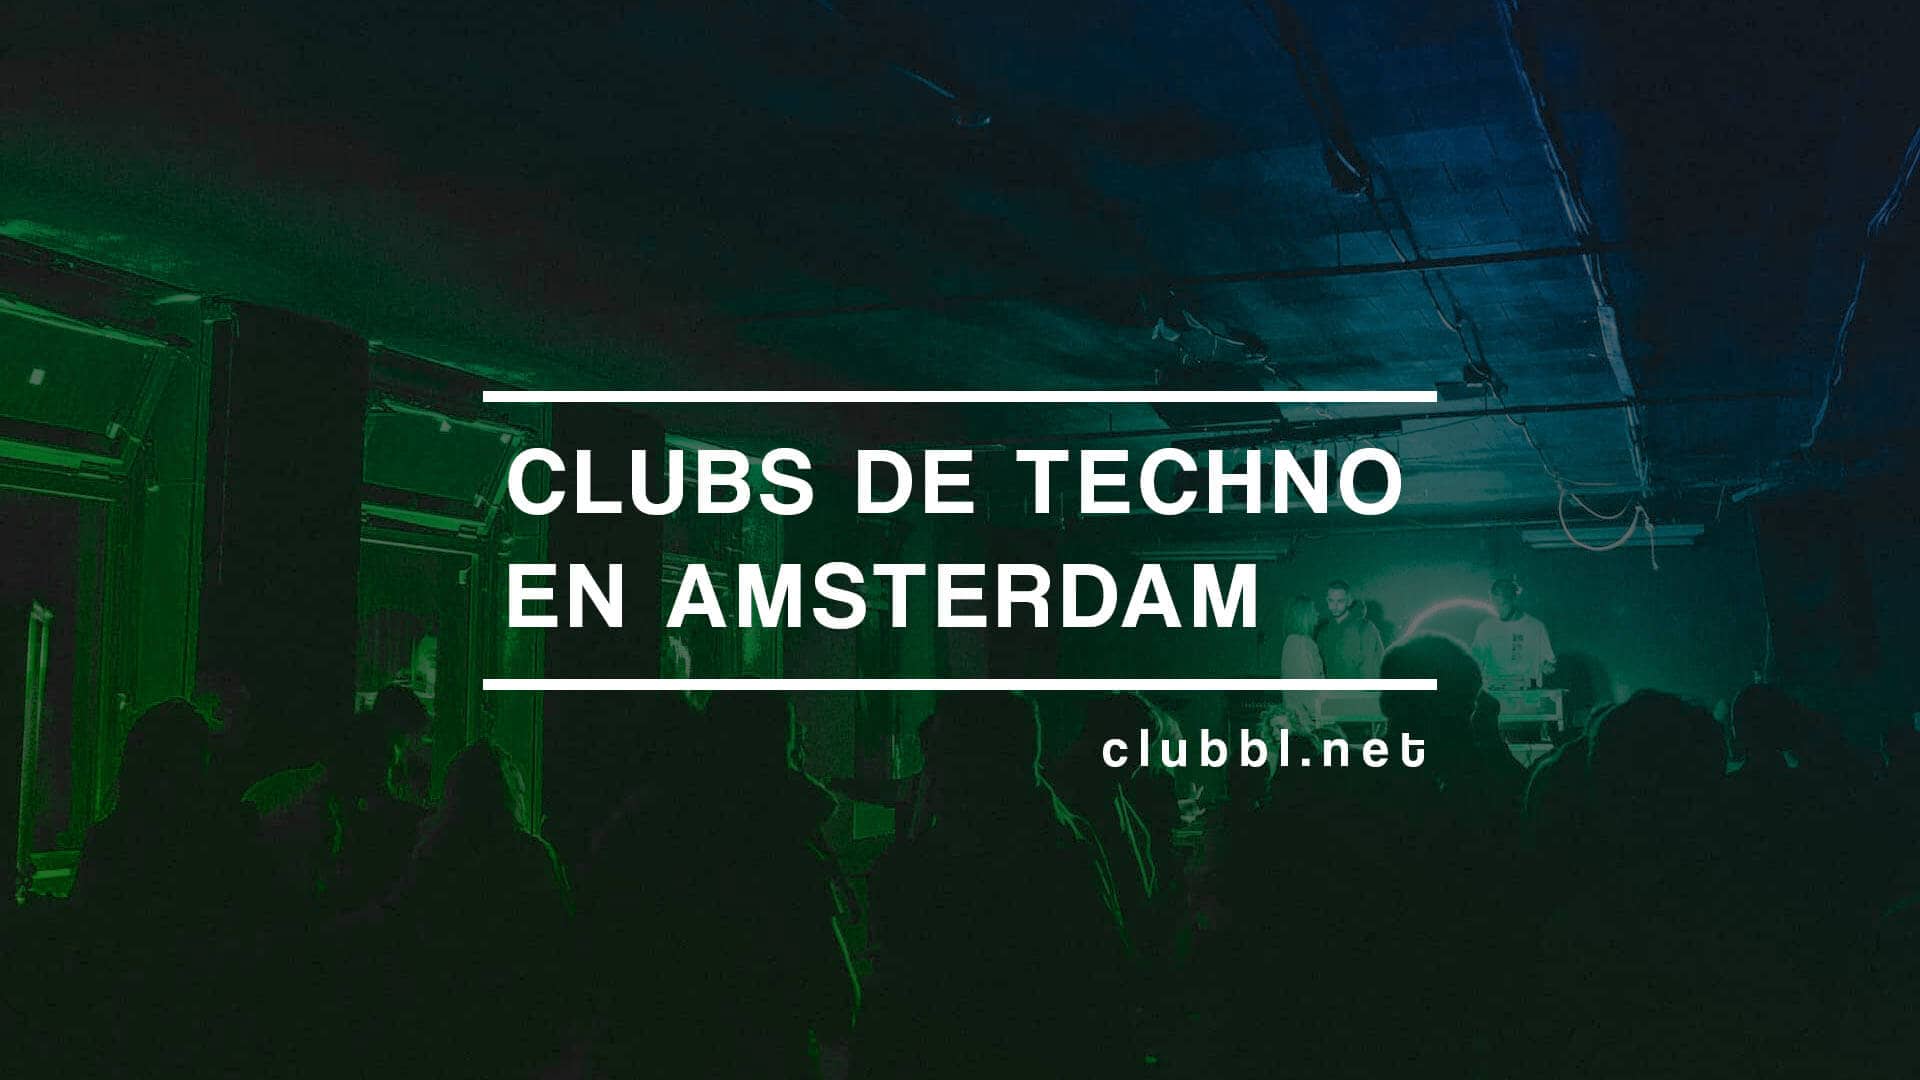 Clubs de techno en Amsterdam que debes conocer, no te lo pierdas y descubre la escena techno de la ciudad